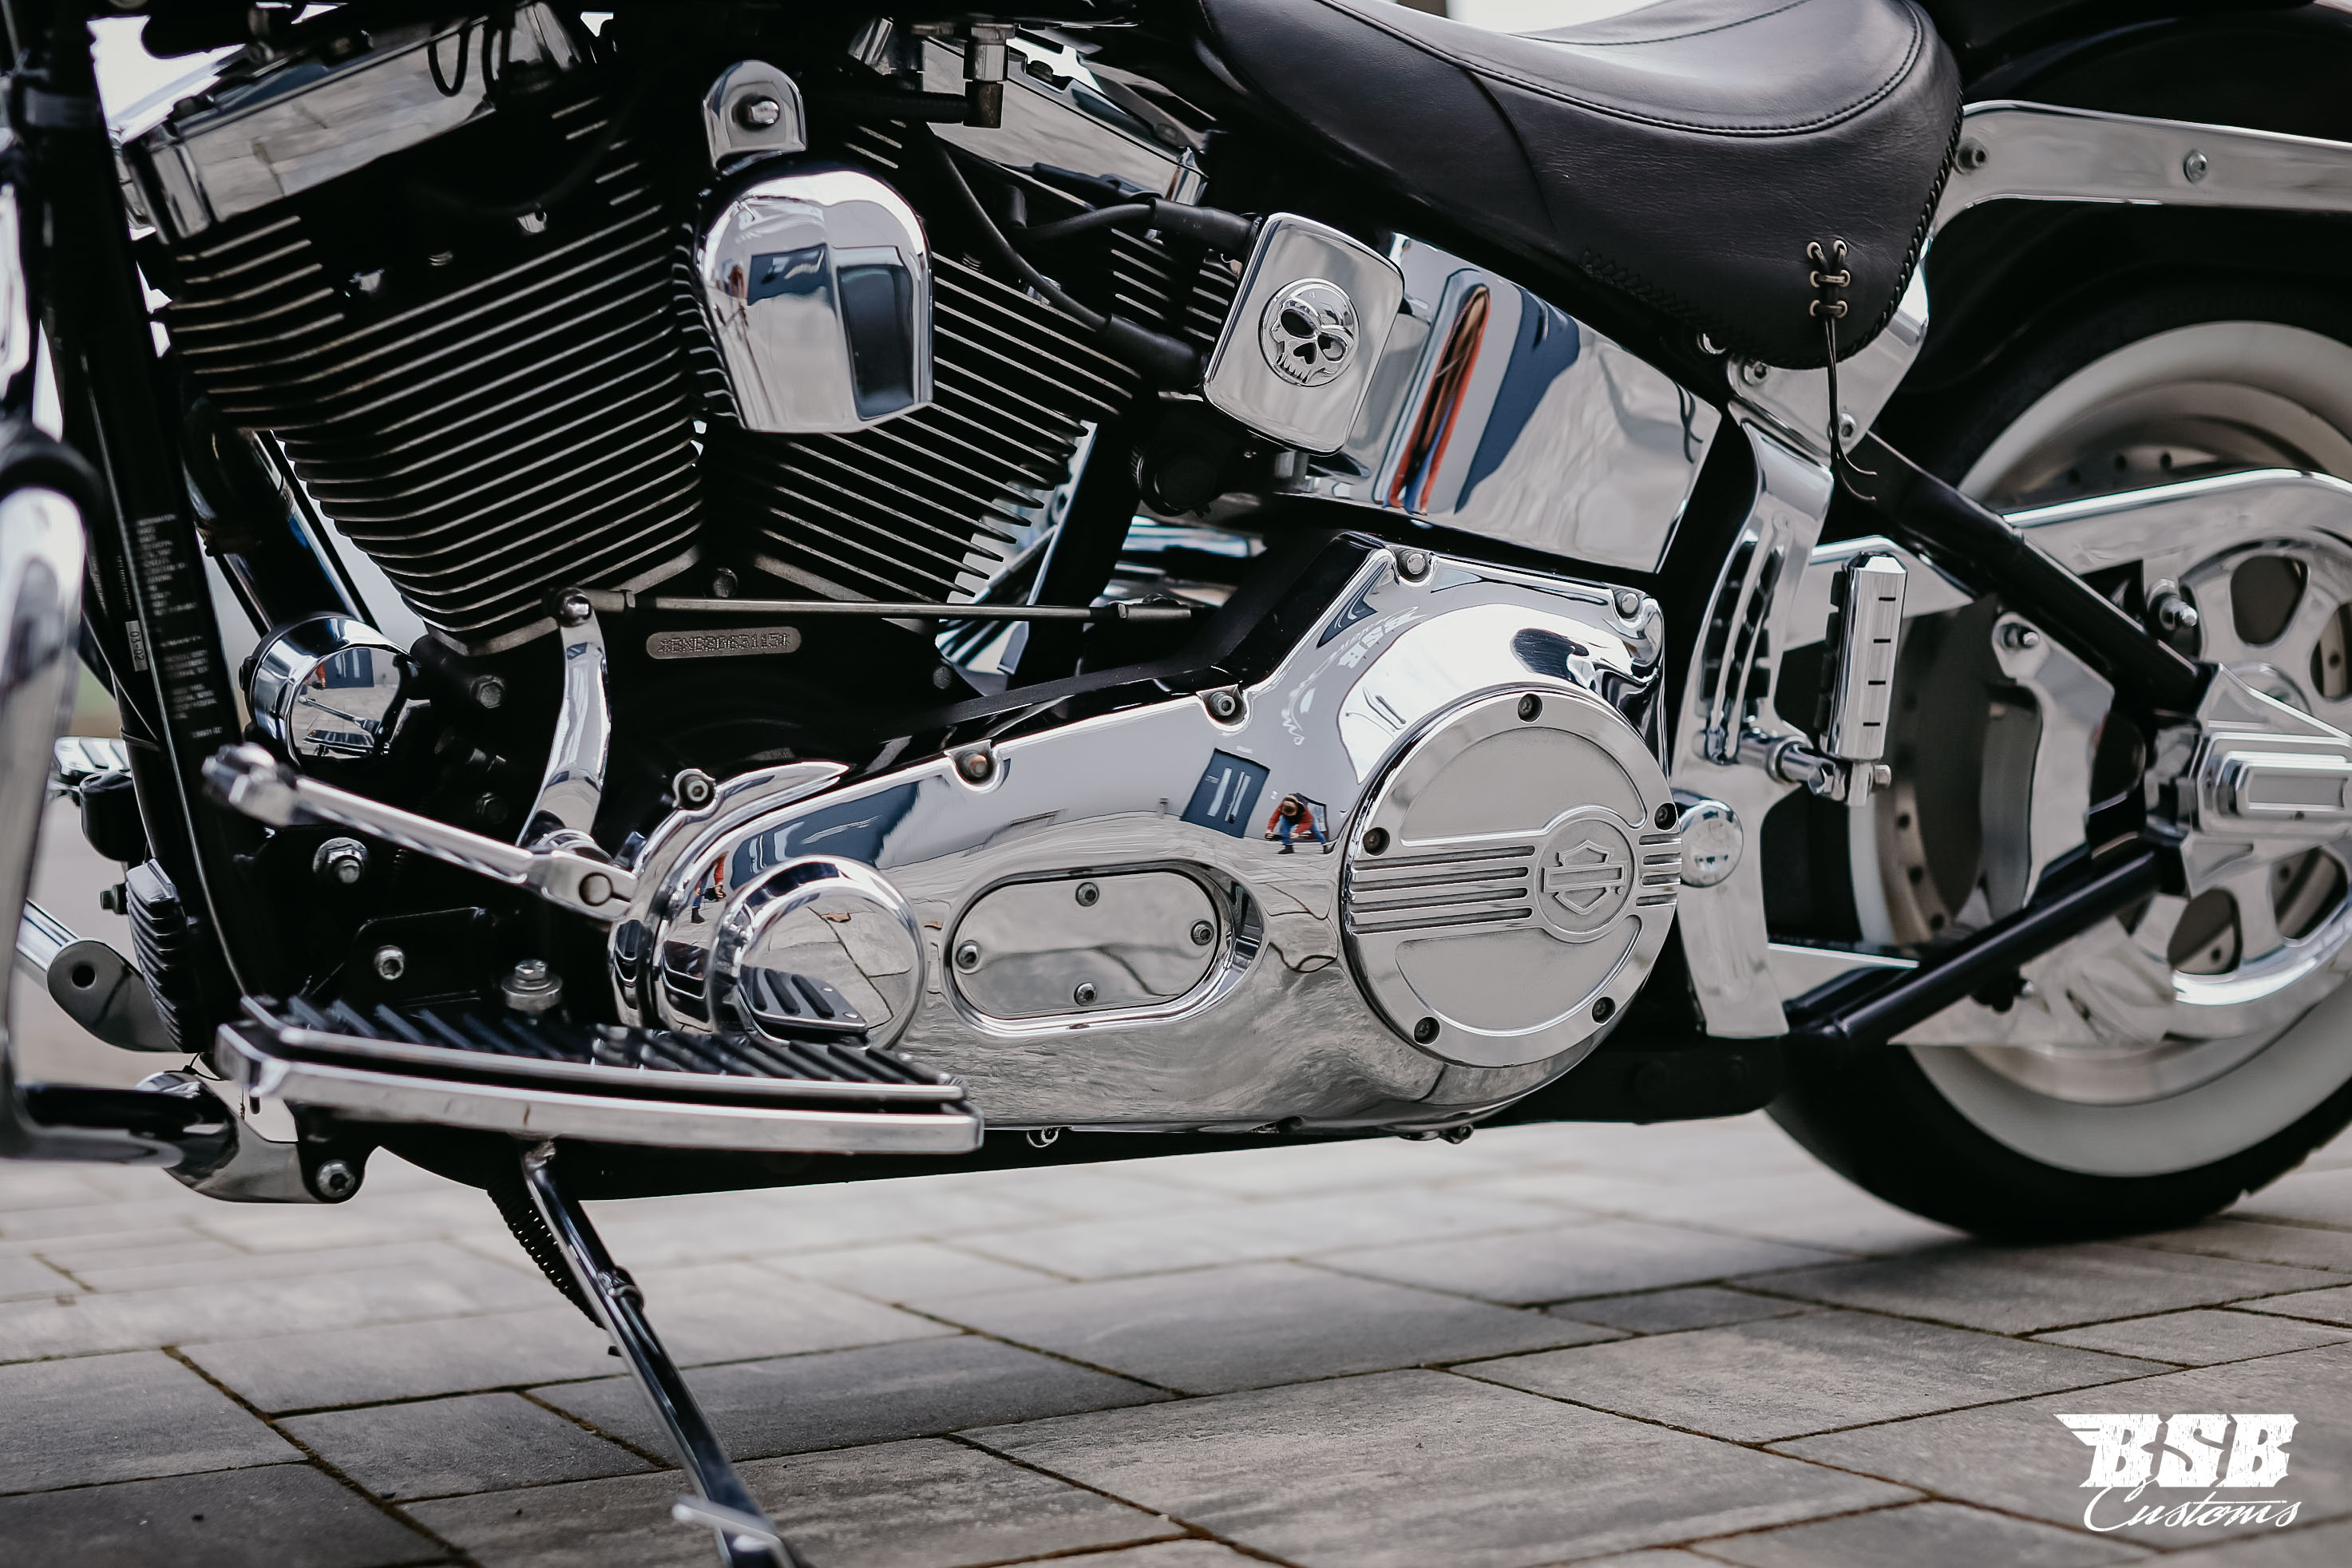 2002 Harley Davidson FAT BOY MIT VIEL CHROME // WEIßWAND REIFEN TOP ZUSTAND ab 179 EUR finanzieren* 